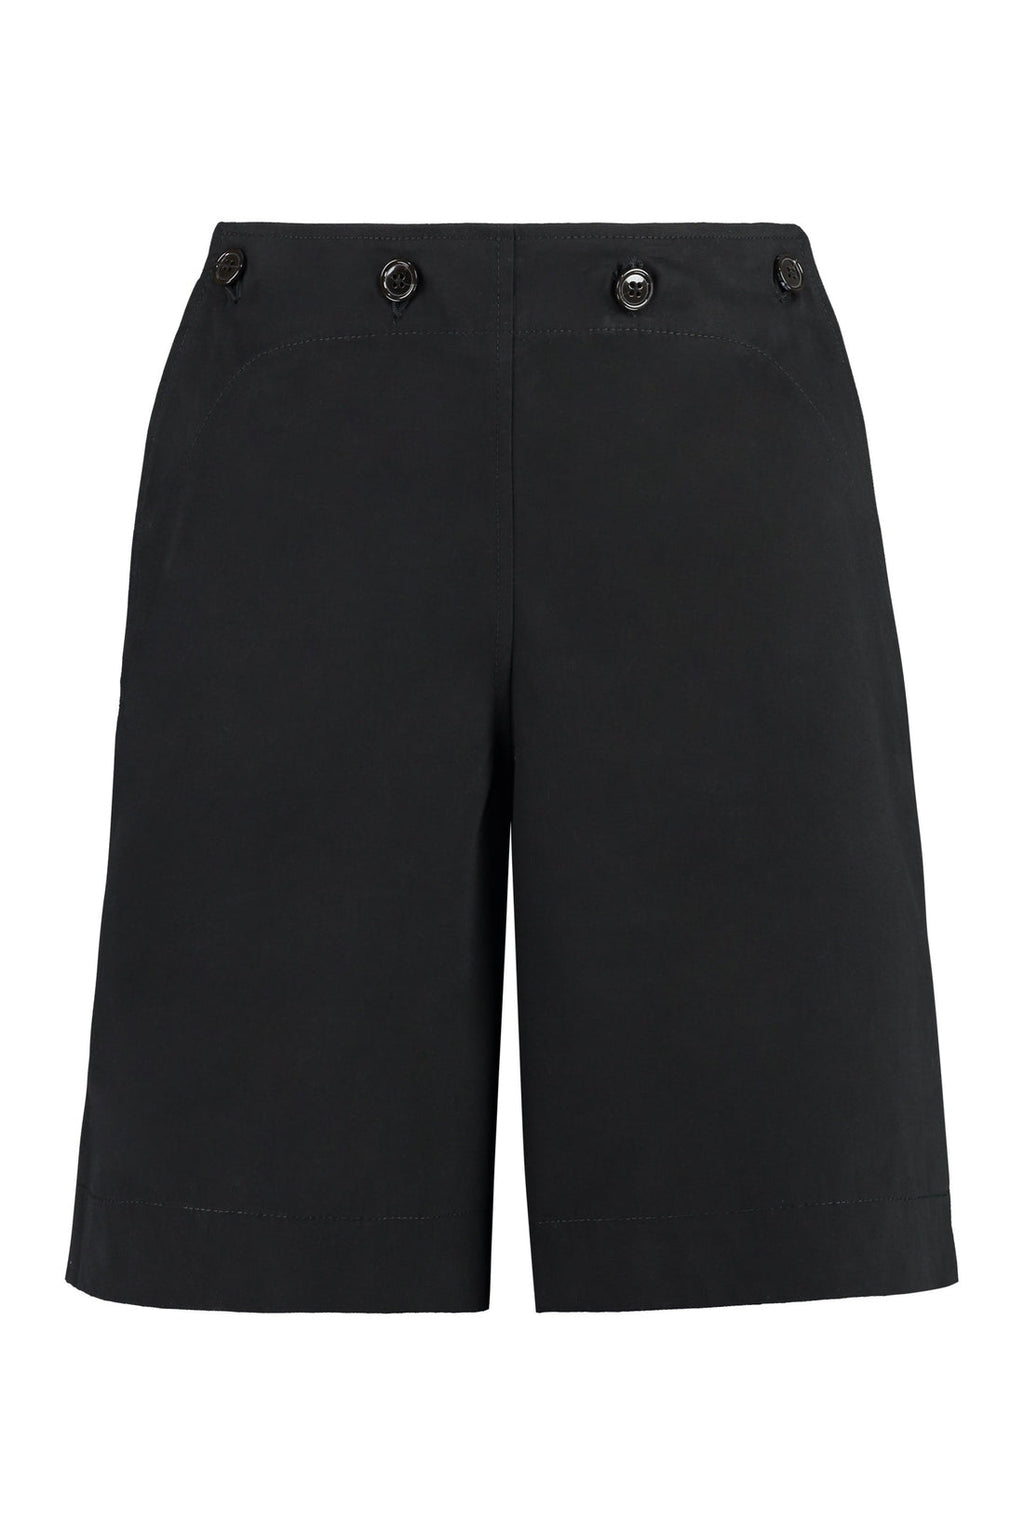 Kenzo-OUTLET-SALE-Cotton shorts-ARCHIVIST